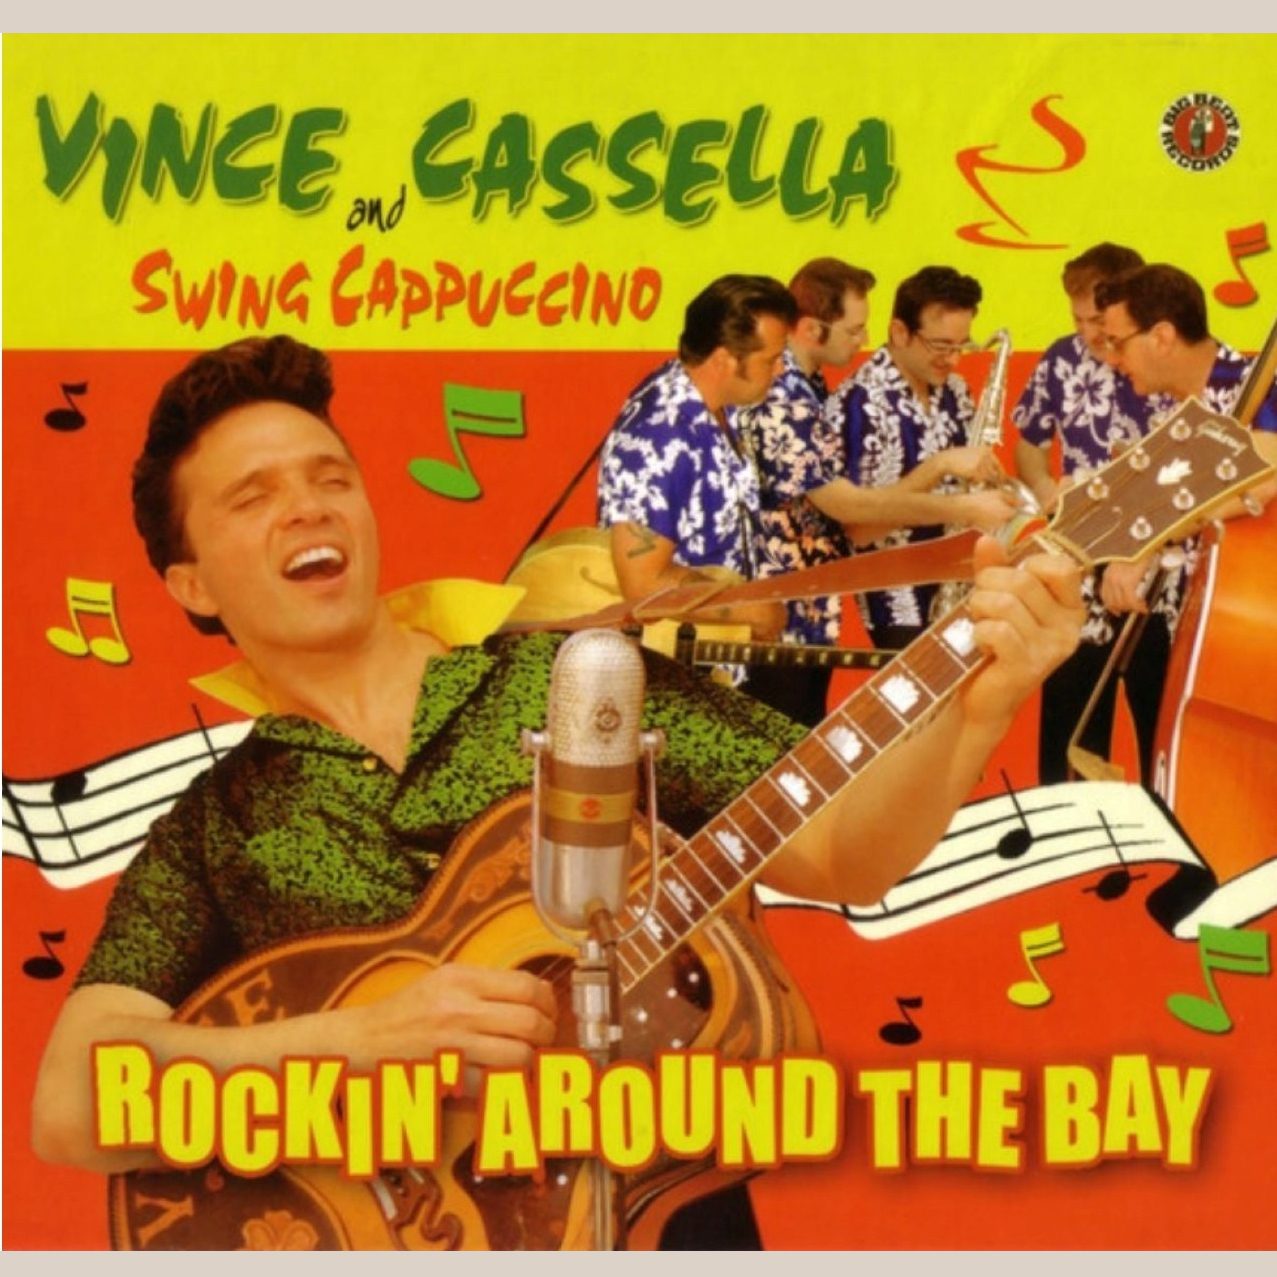 Vince Cassella & Swing Cappuccino